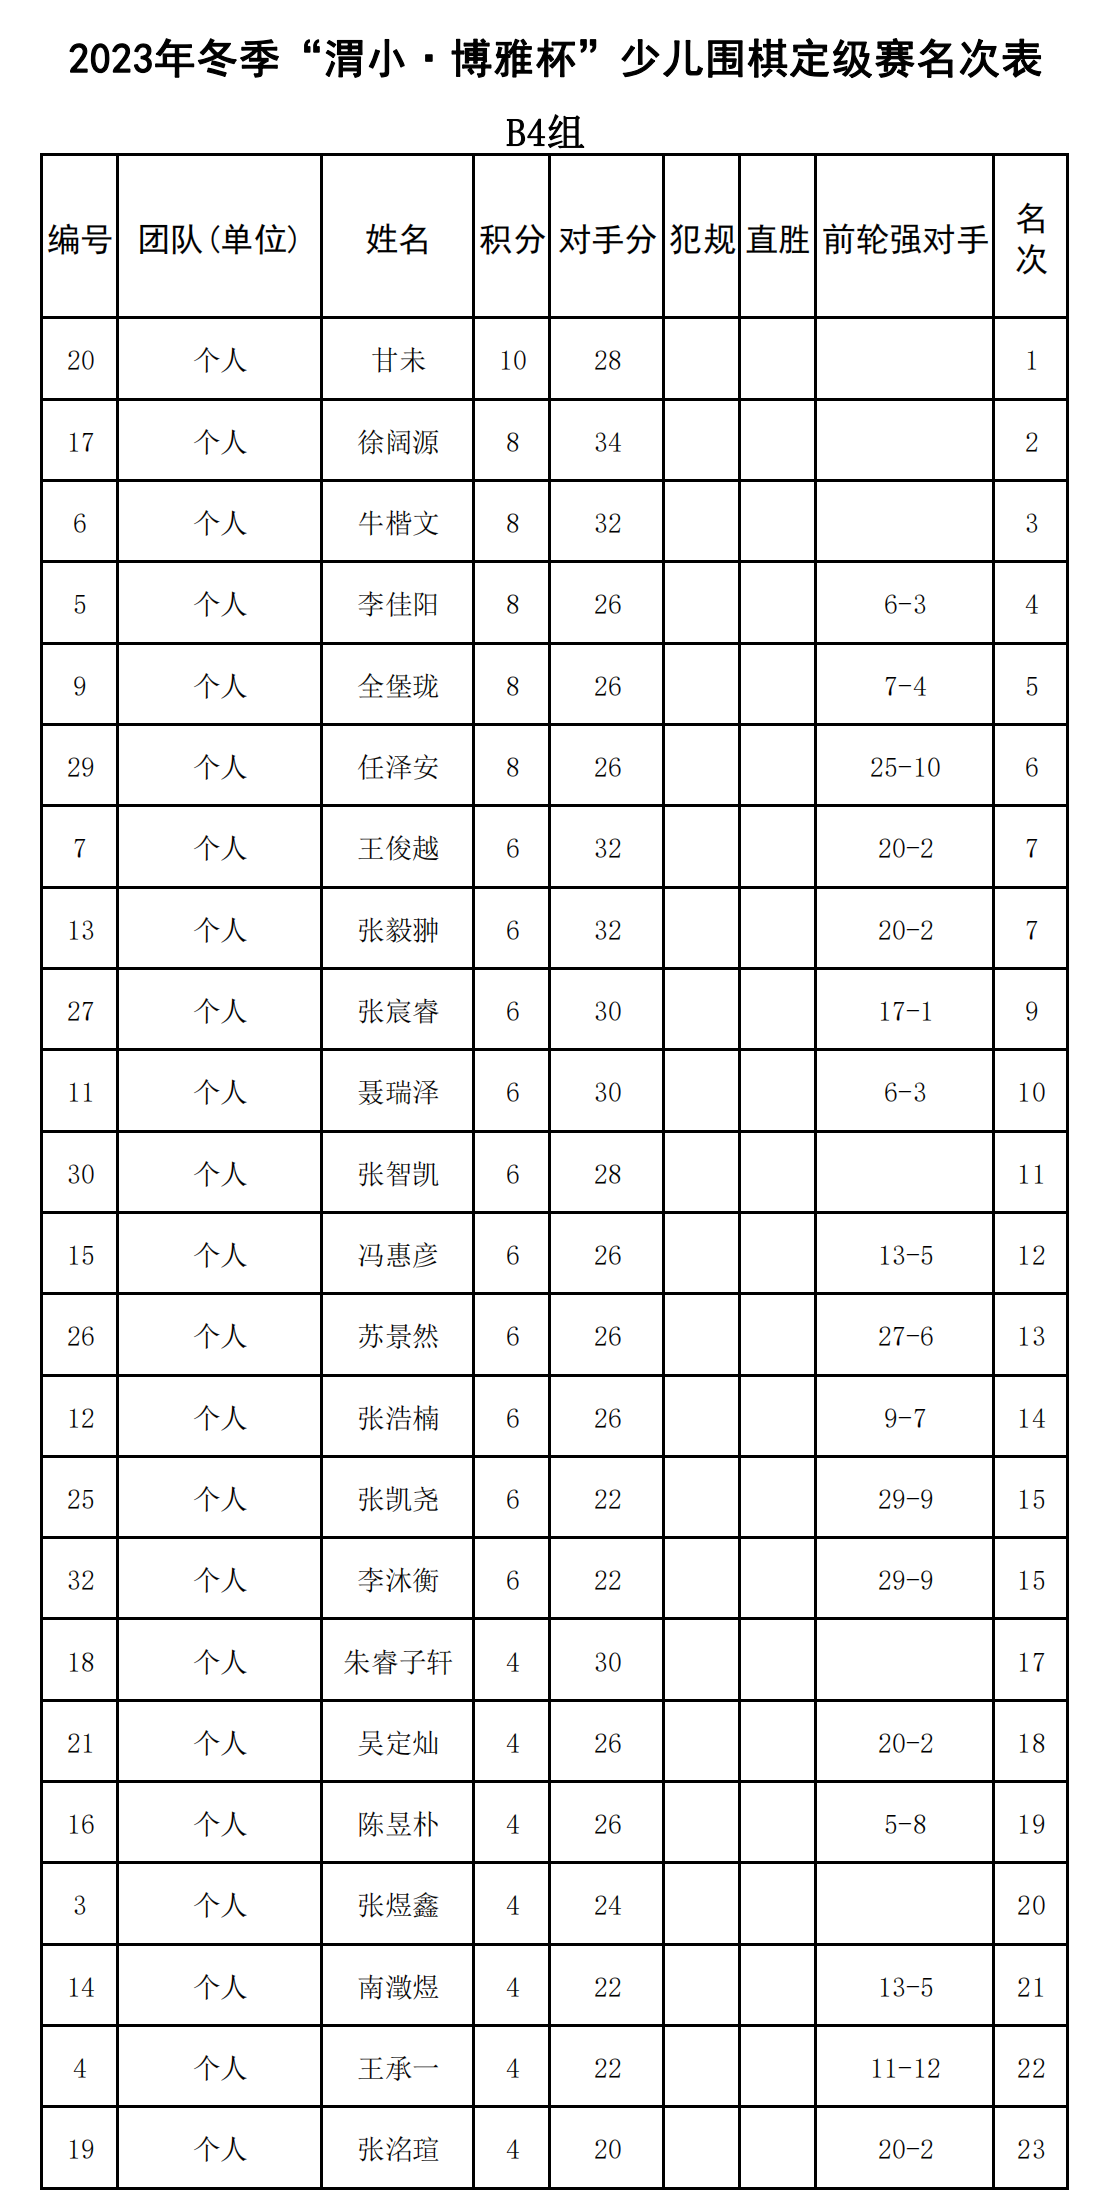 2023年冬季“渭小·博雅杯”少儿围棋定级赛B4组(名次表)_00.png